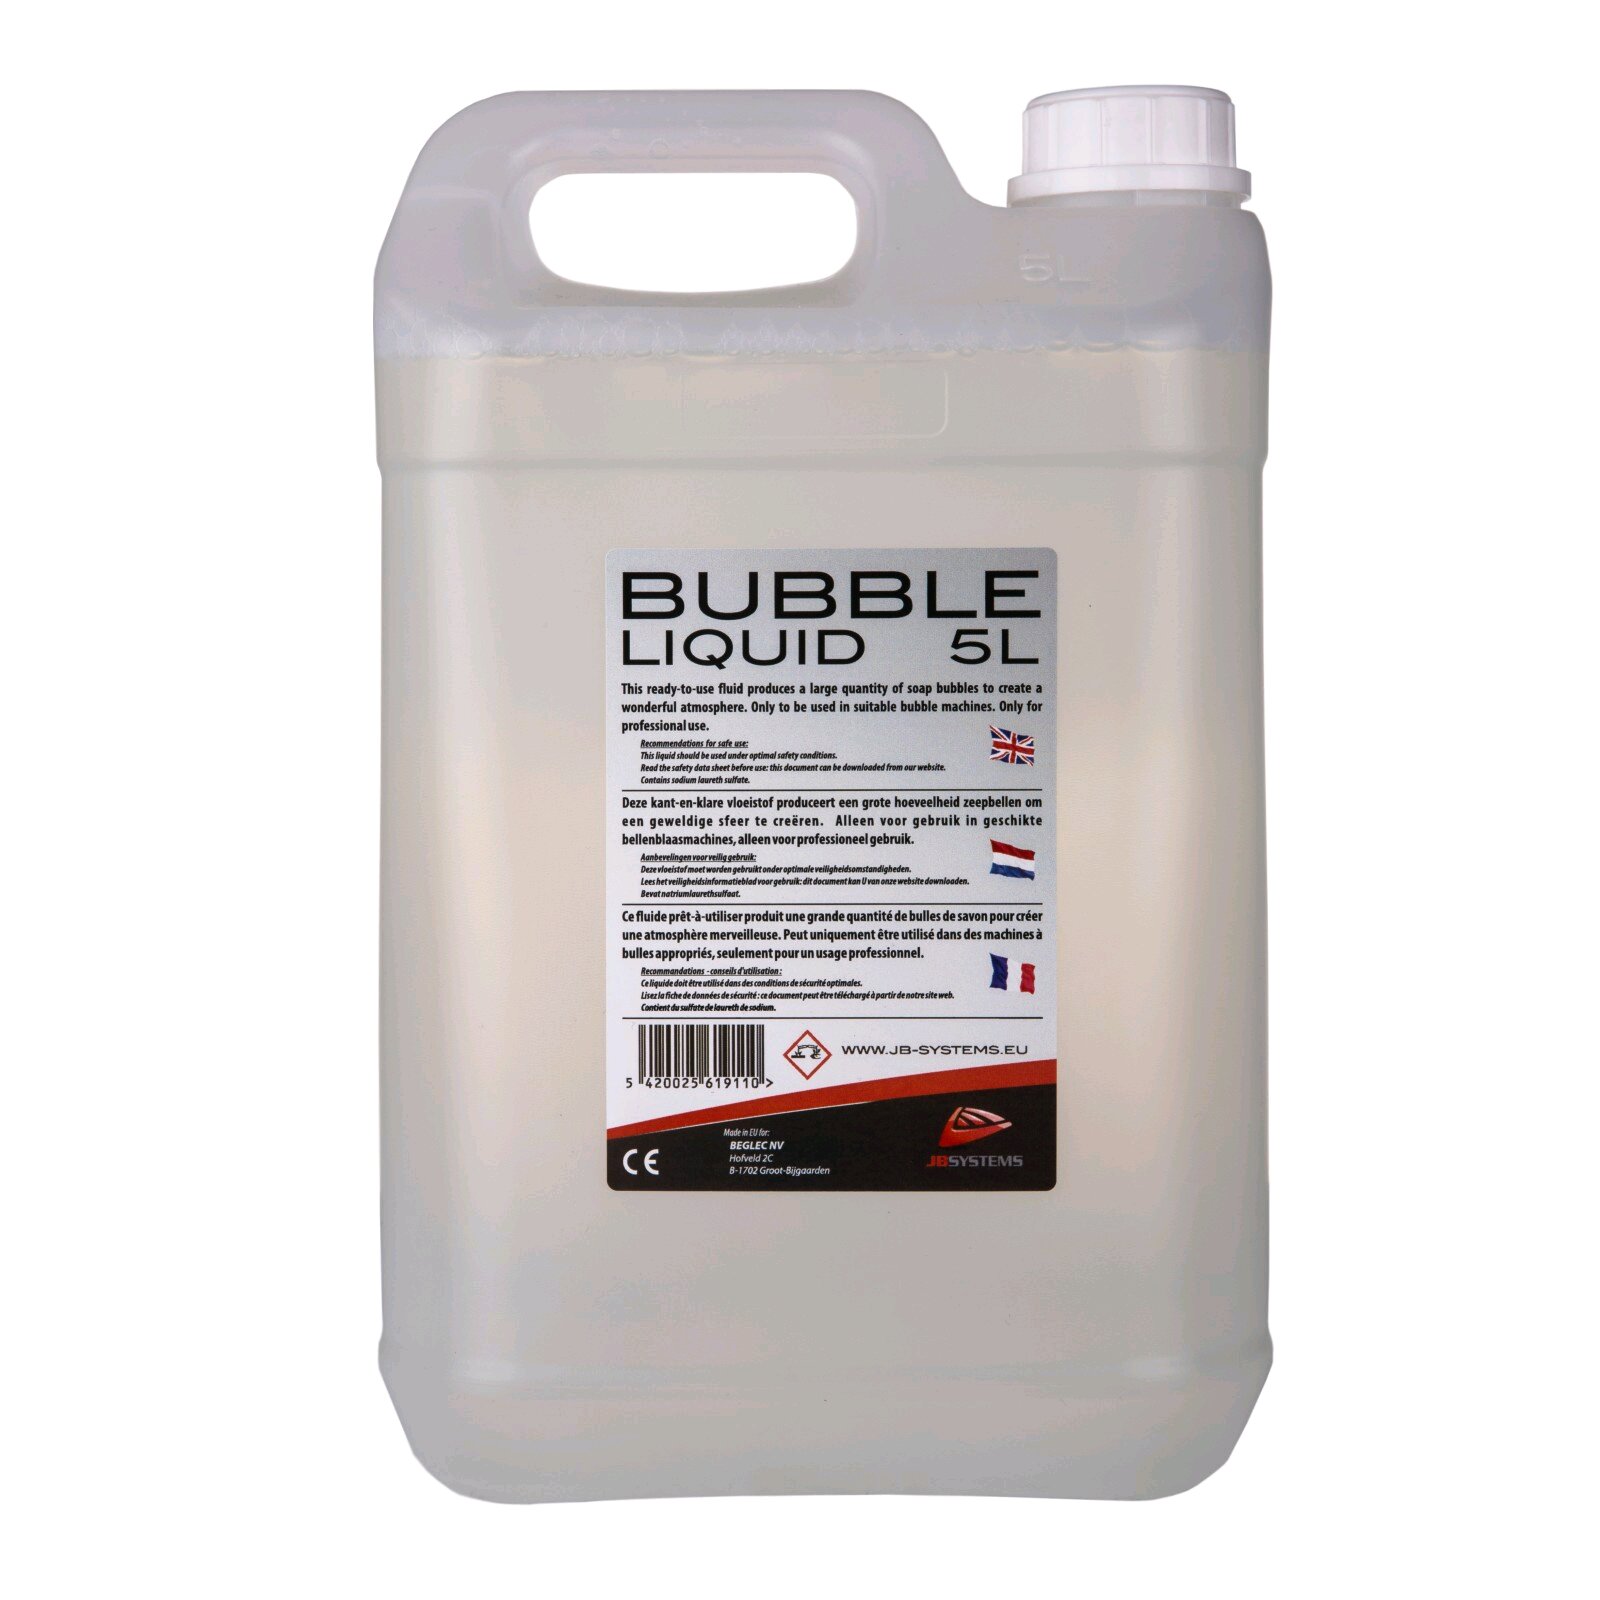 JBSYSTEMS BUBBLE LIQUID 5L – 5L liquide à bulles : photo 1